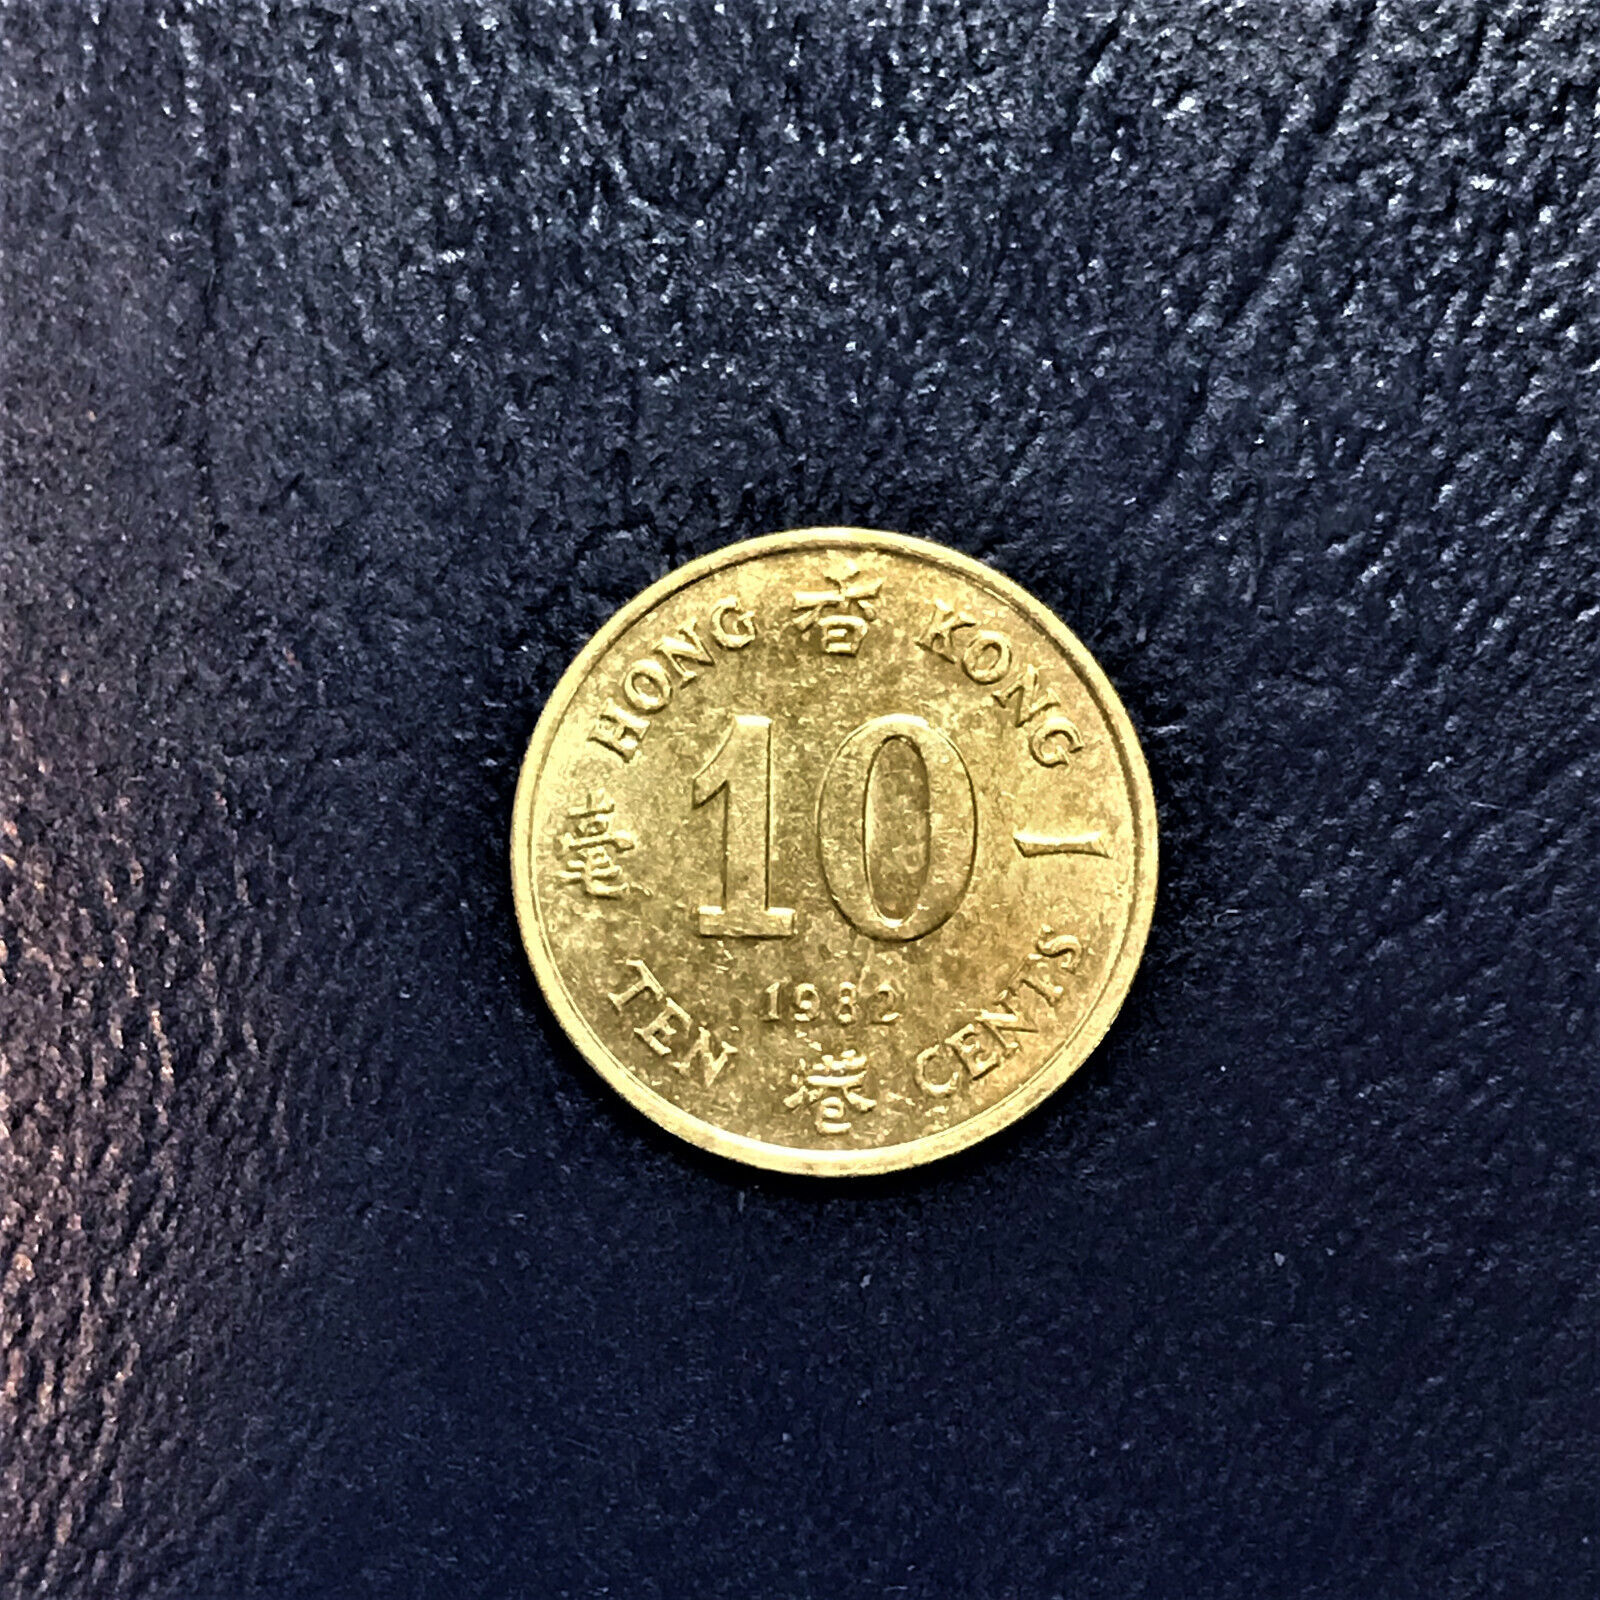 1982 年 10 Cents Hong Kong 香港 Xiānggǎng 10美分 Měi fēn First Year 第一年 Dì yī nián AU